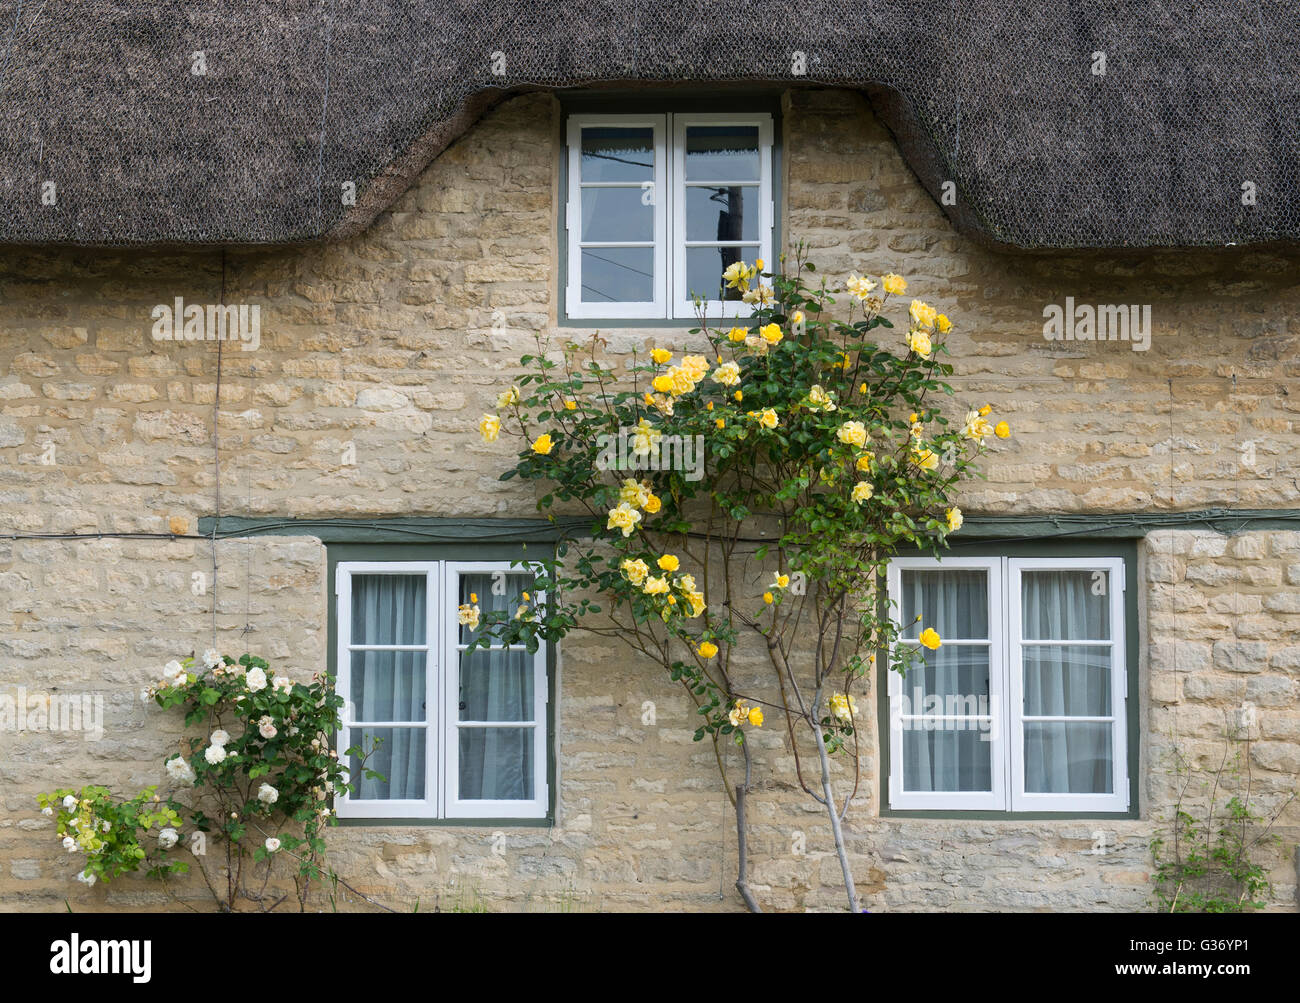 Gelbe Rosen auf der Vorderseite eine strohgedeckte Hütte. Minster Lovell, Oxfordshire, England Stockfoto